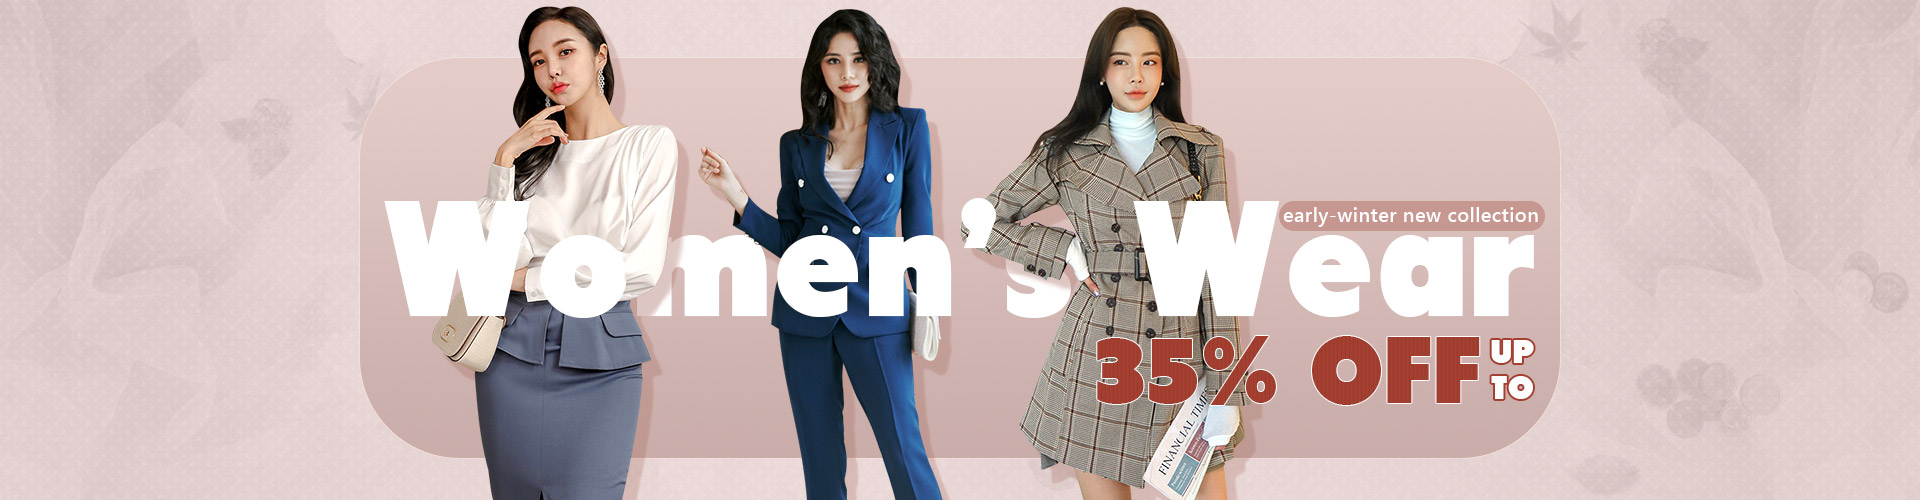 Women’s Wear